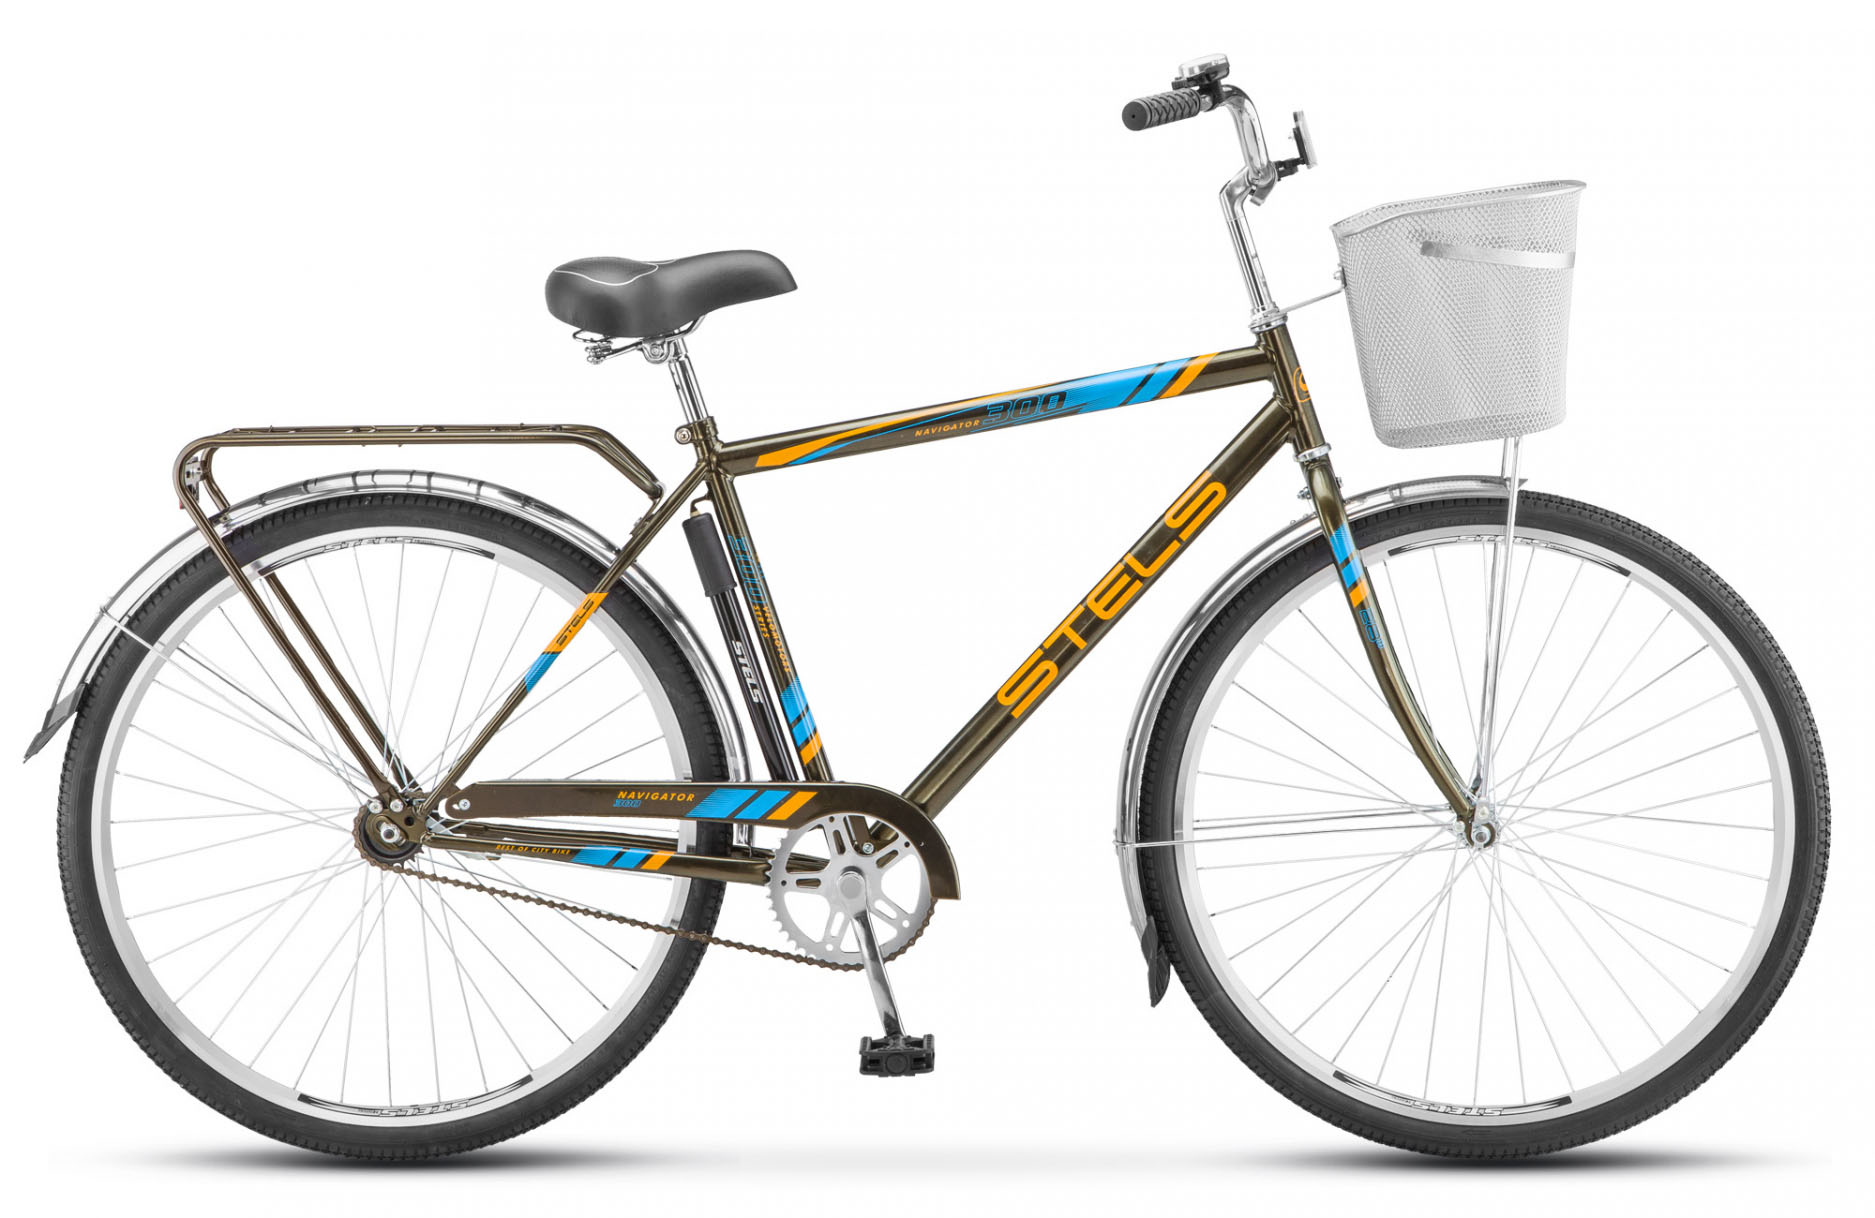  Отзывы о Городском велосипеде Stels Navigator 300 Gent 28" Z010 2018